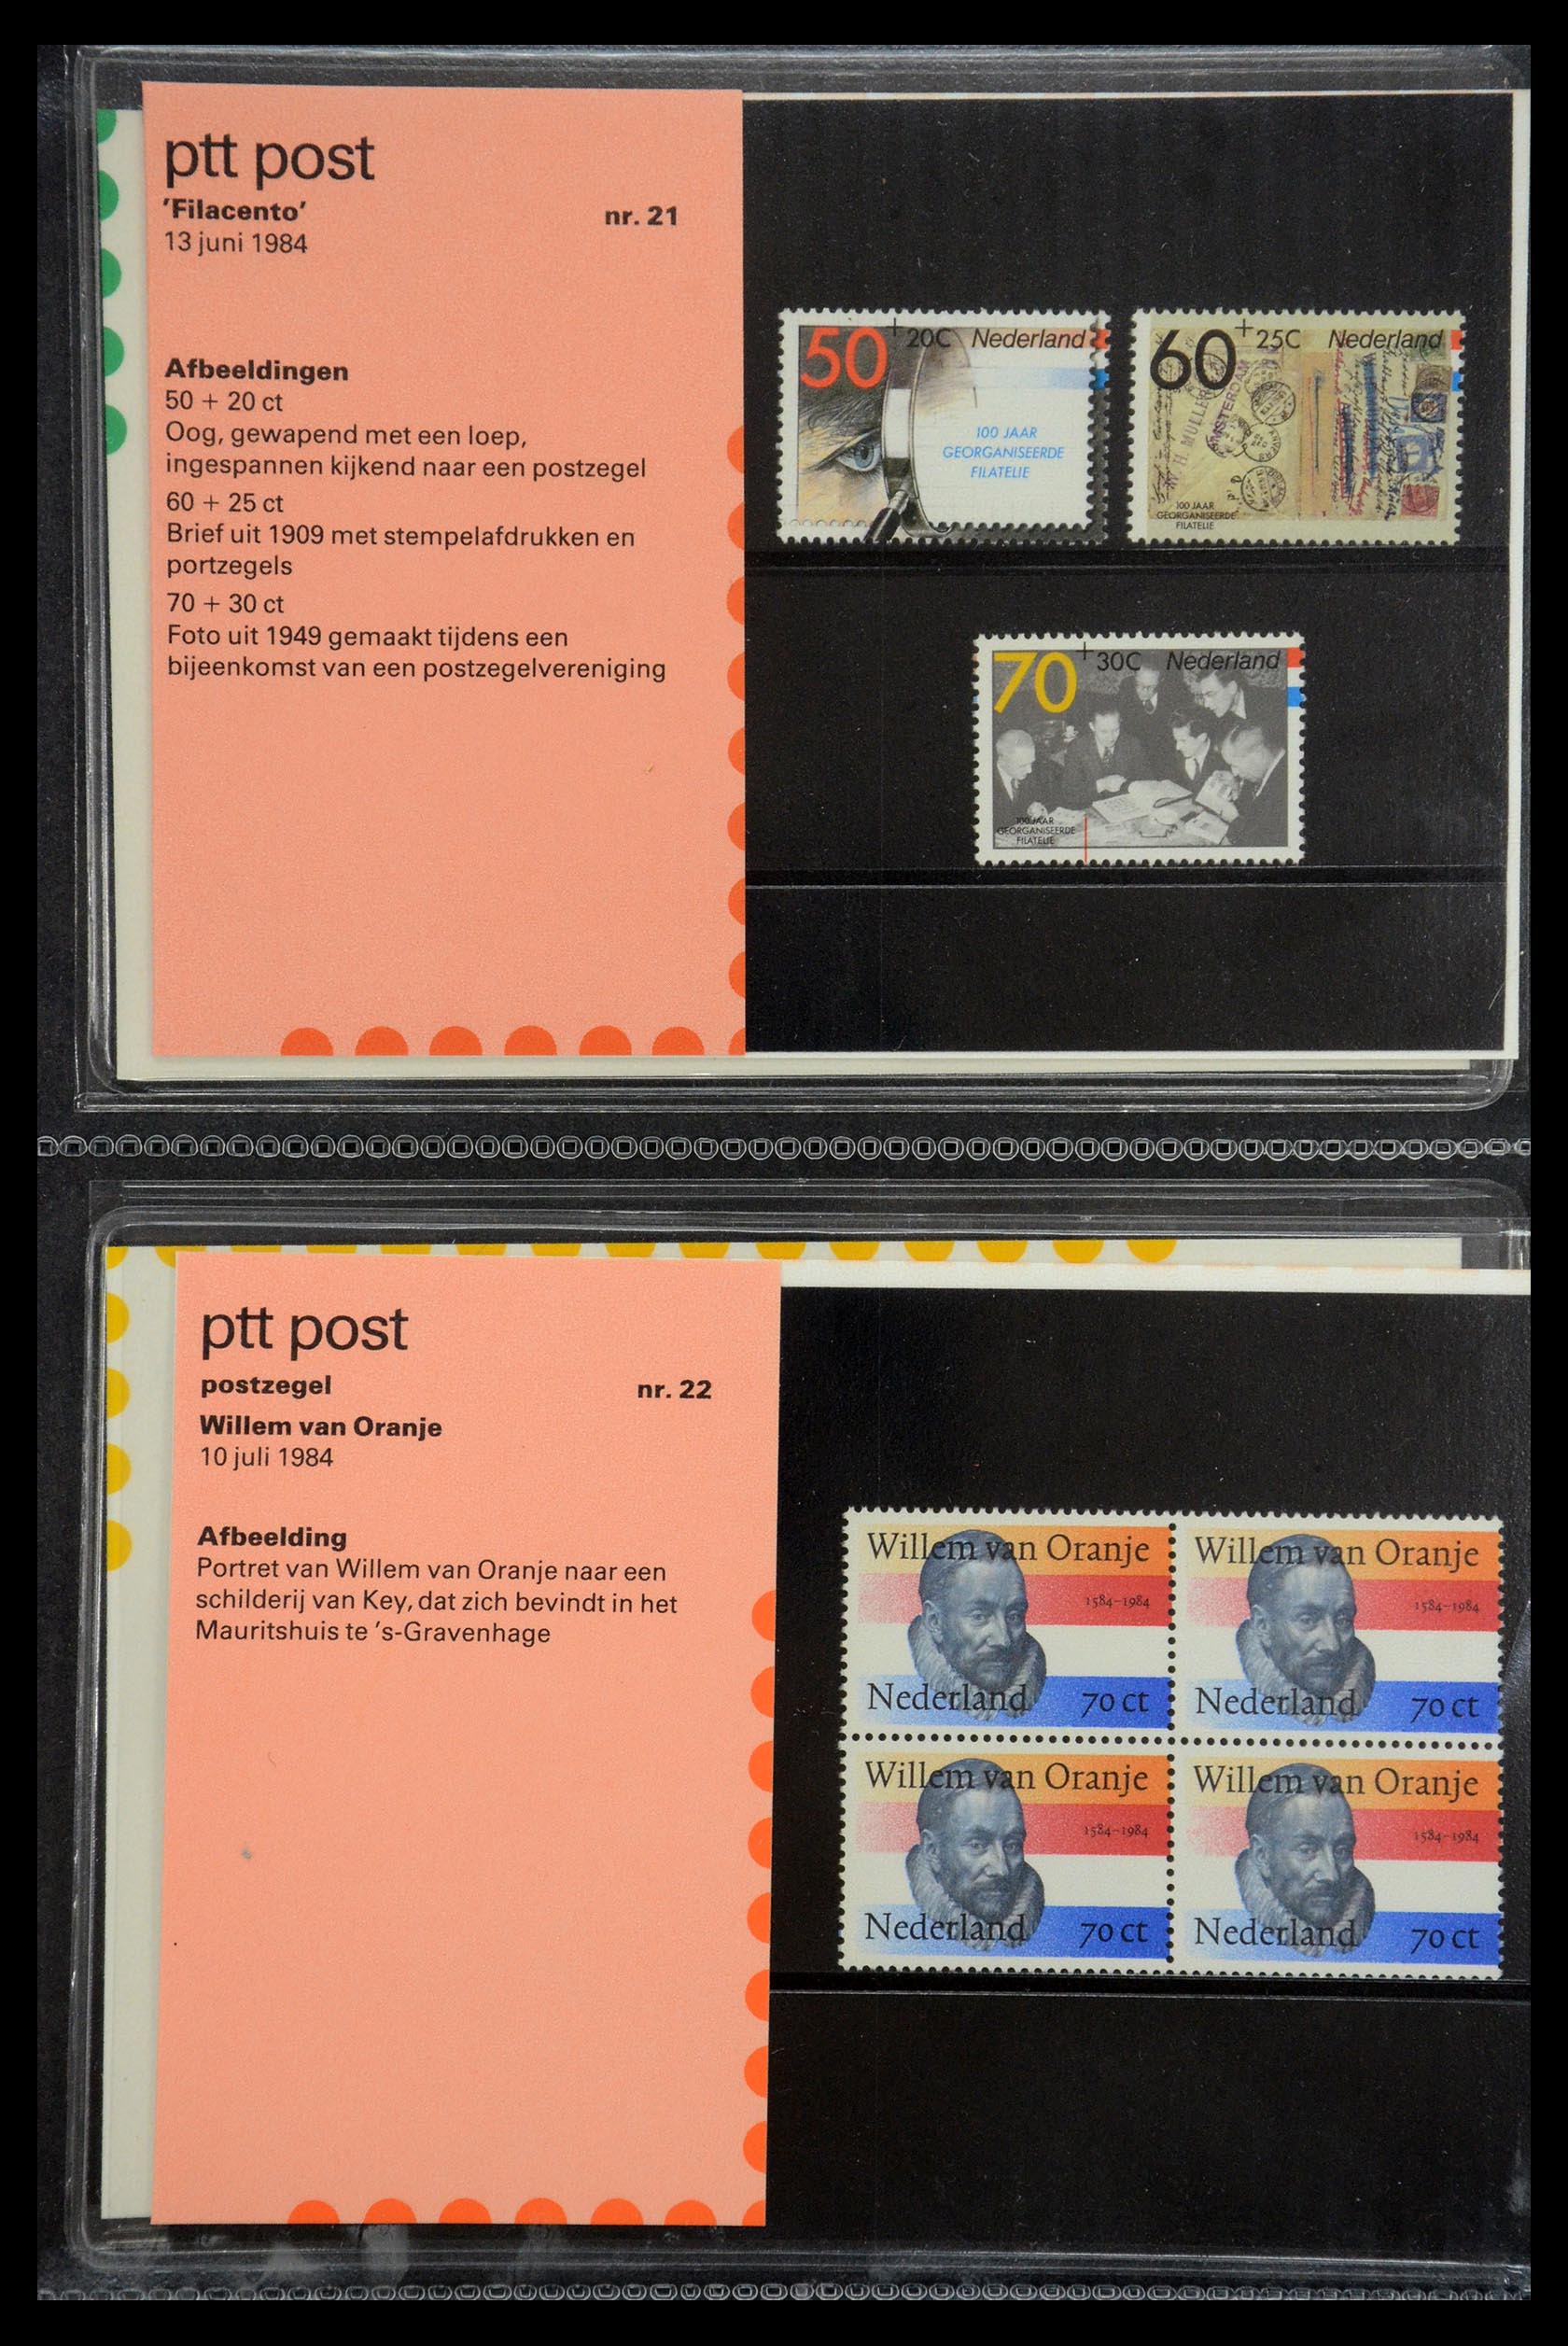 35187 011 - Stamp Collection 35187 Netherlands PTT presentation packs 1982-2019!